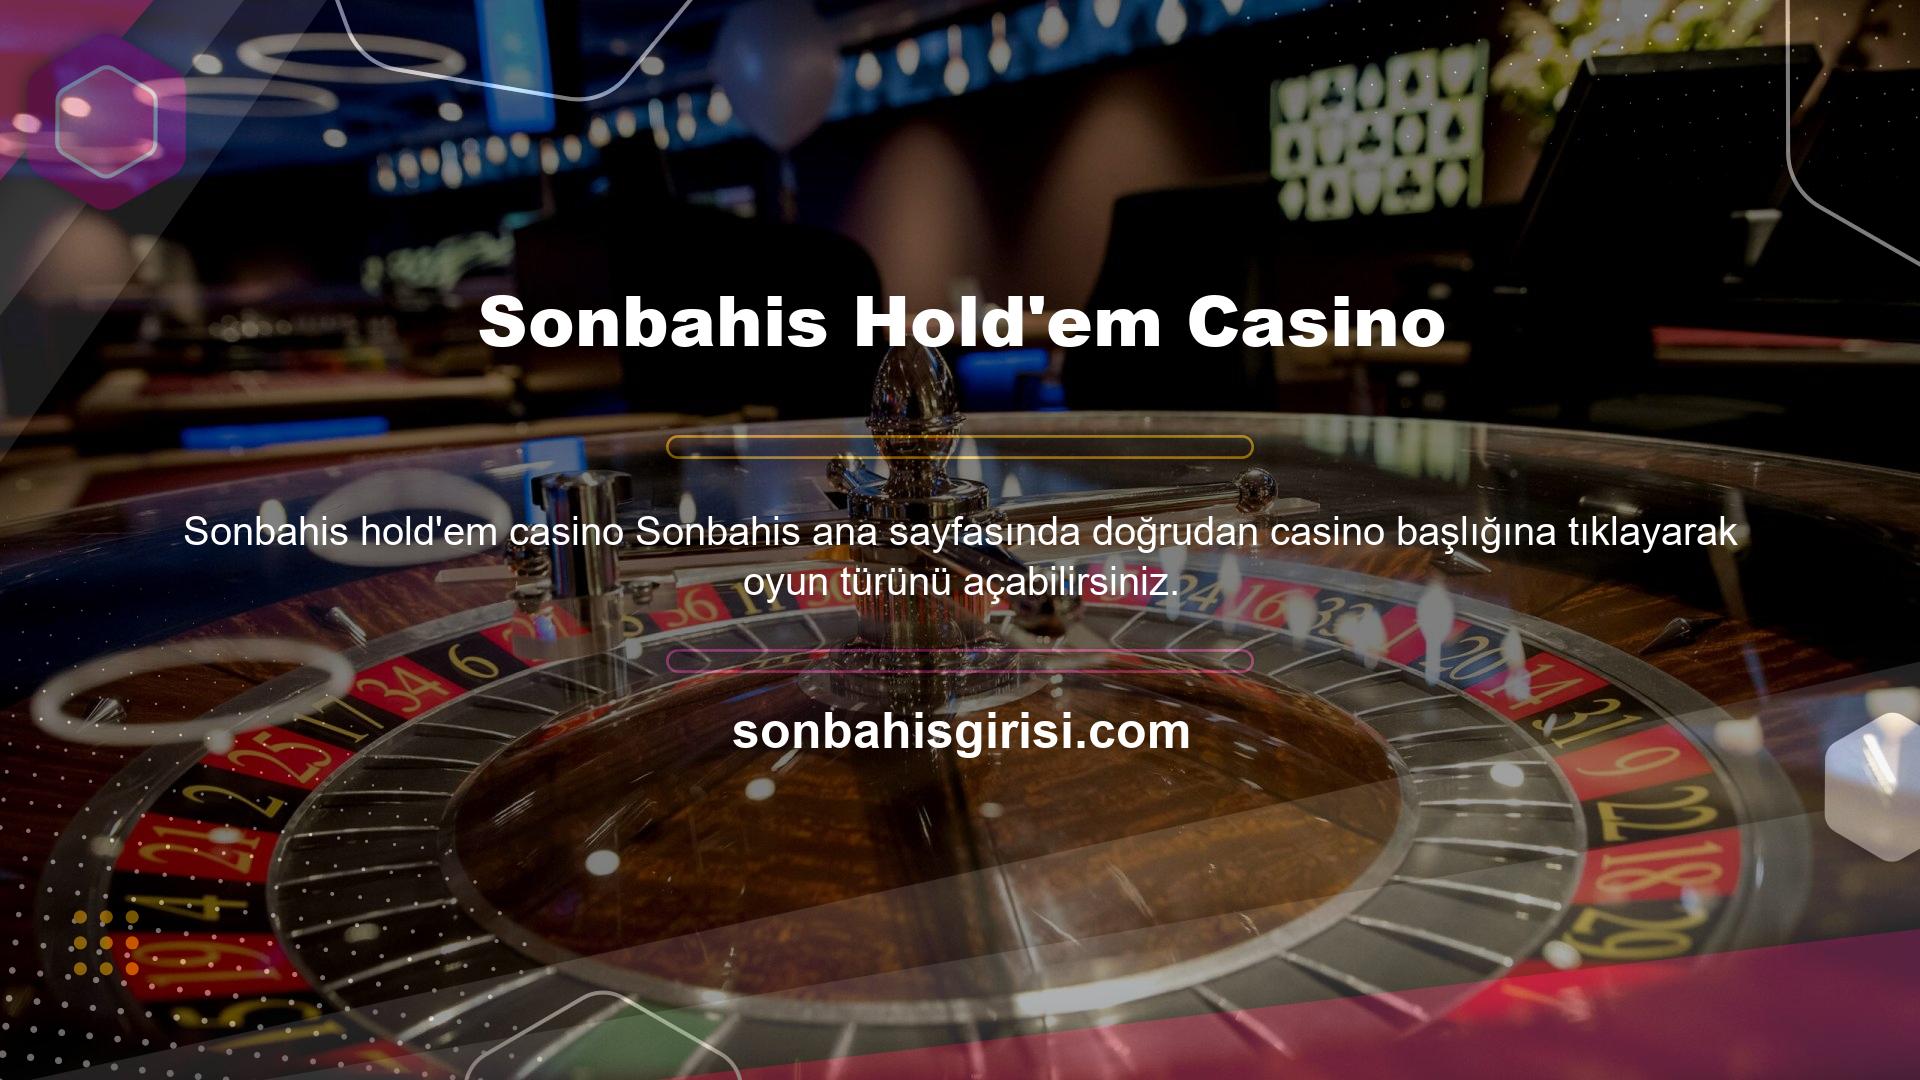 Sonbahis, Casino Hold'em'i basit bir poker oyunu olarak görüyor